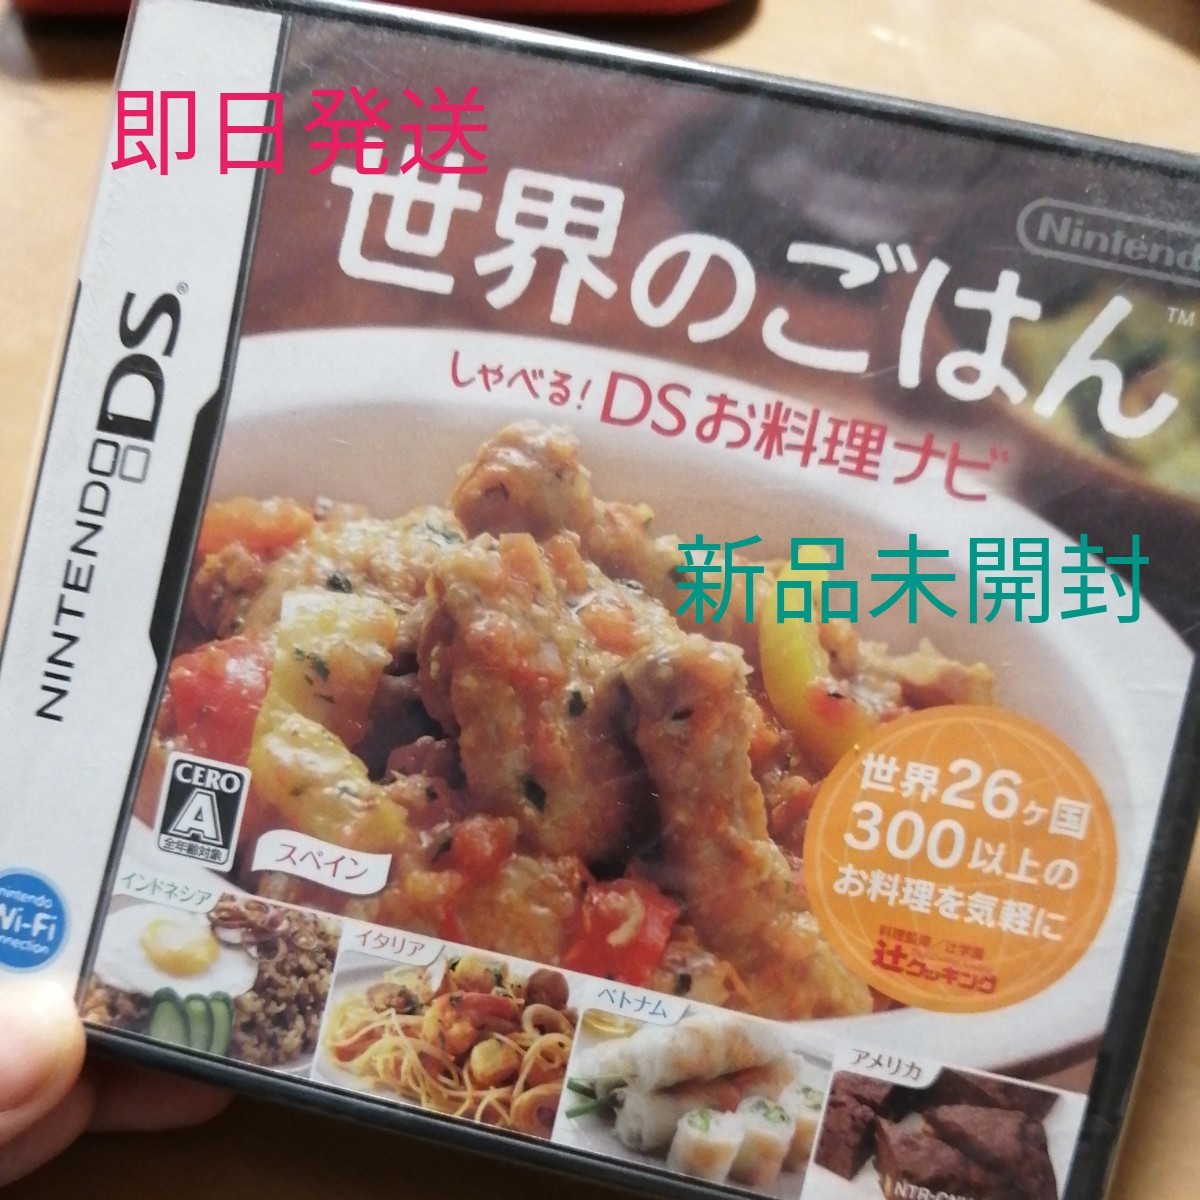 【DS】 世界のごはん  しゃべる!DSお料理ナビ 任天堂